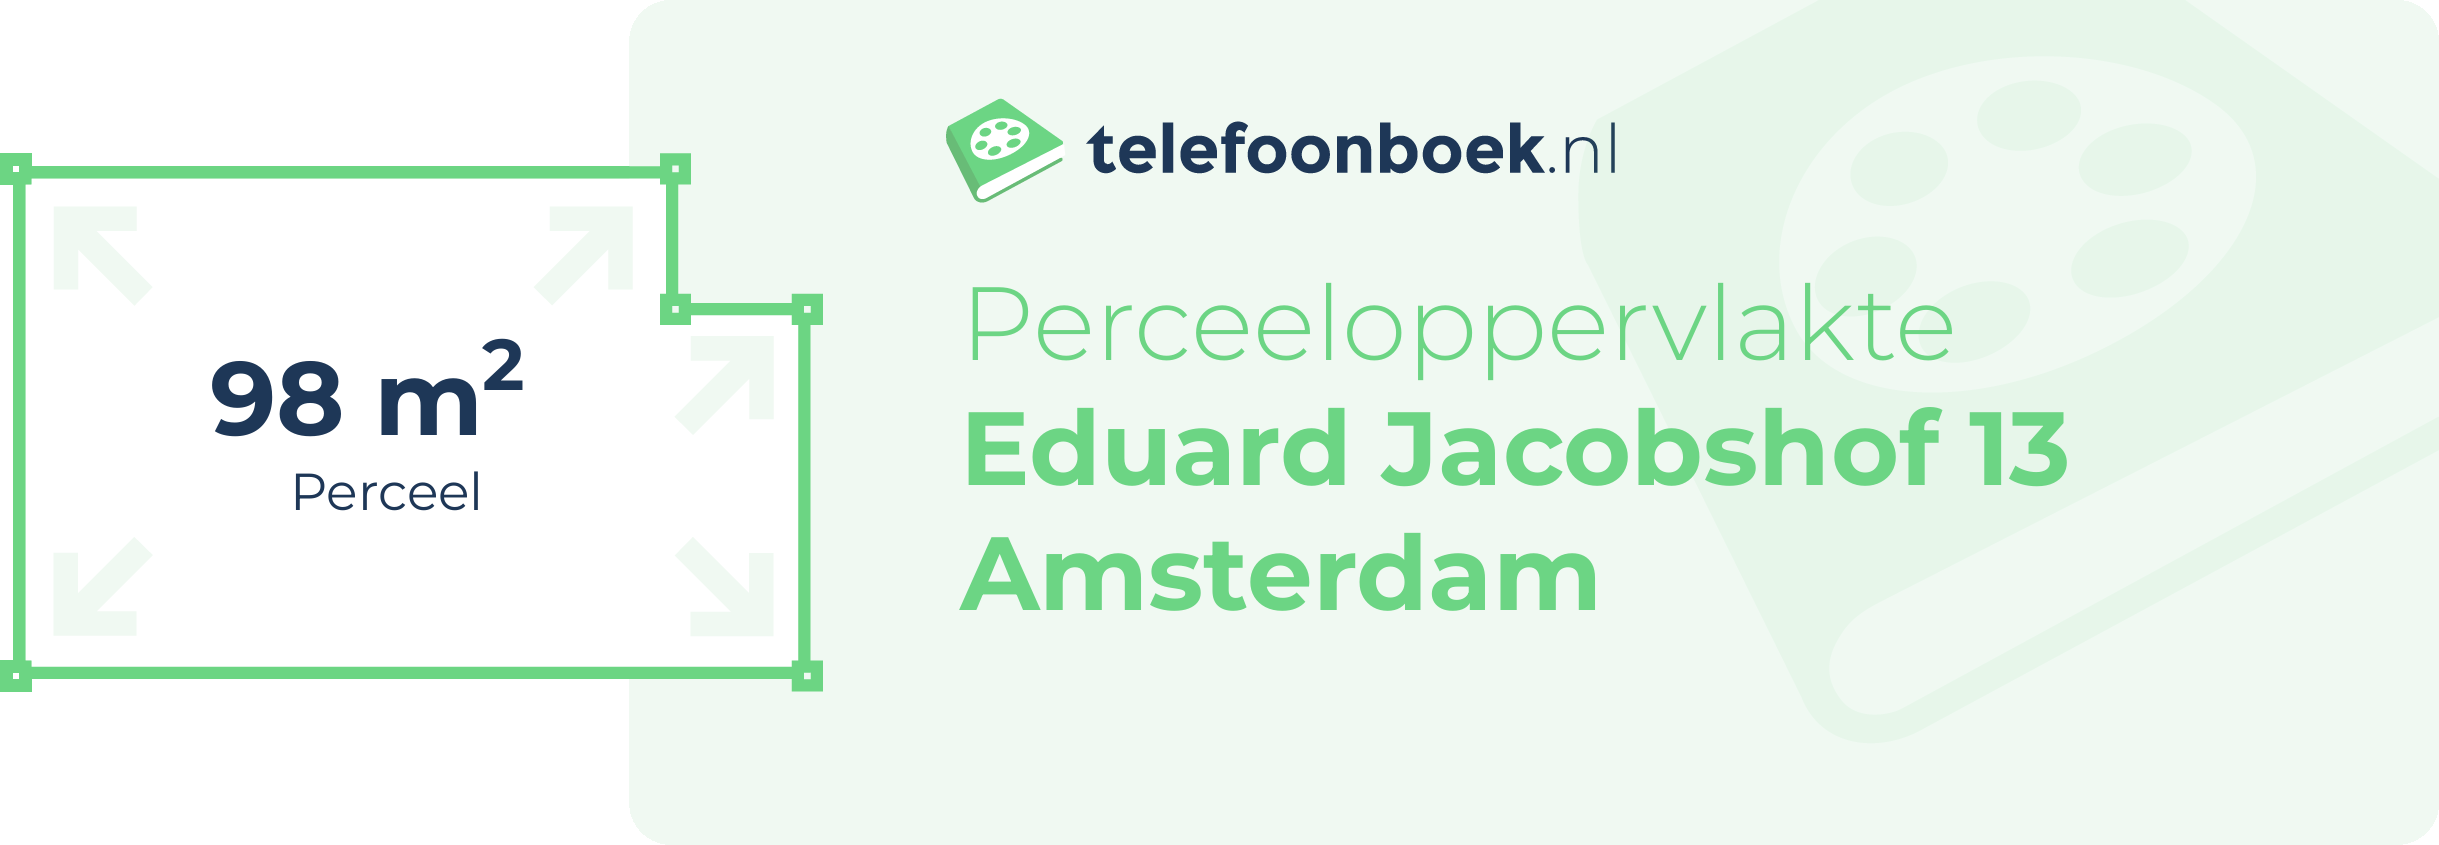 Perceeloppervlakte Eduard Jacobshof 13 Amsterdam